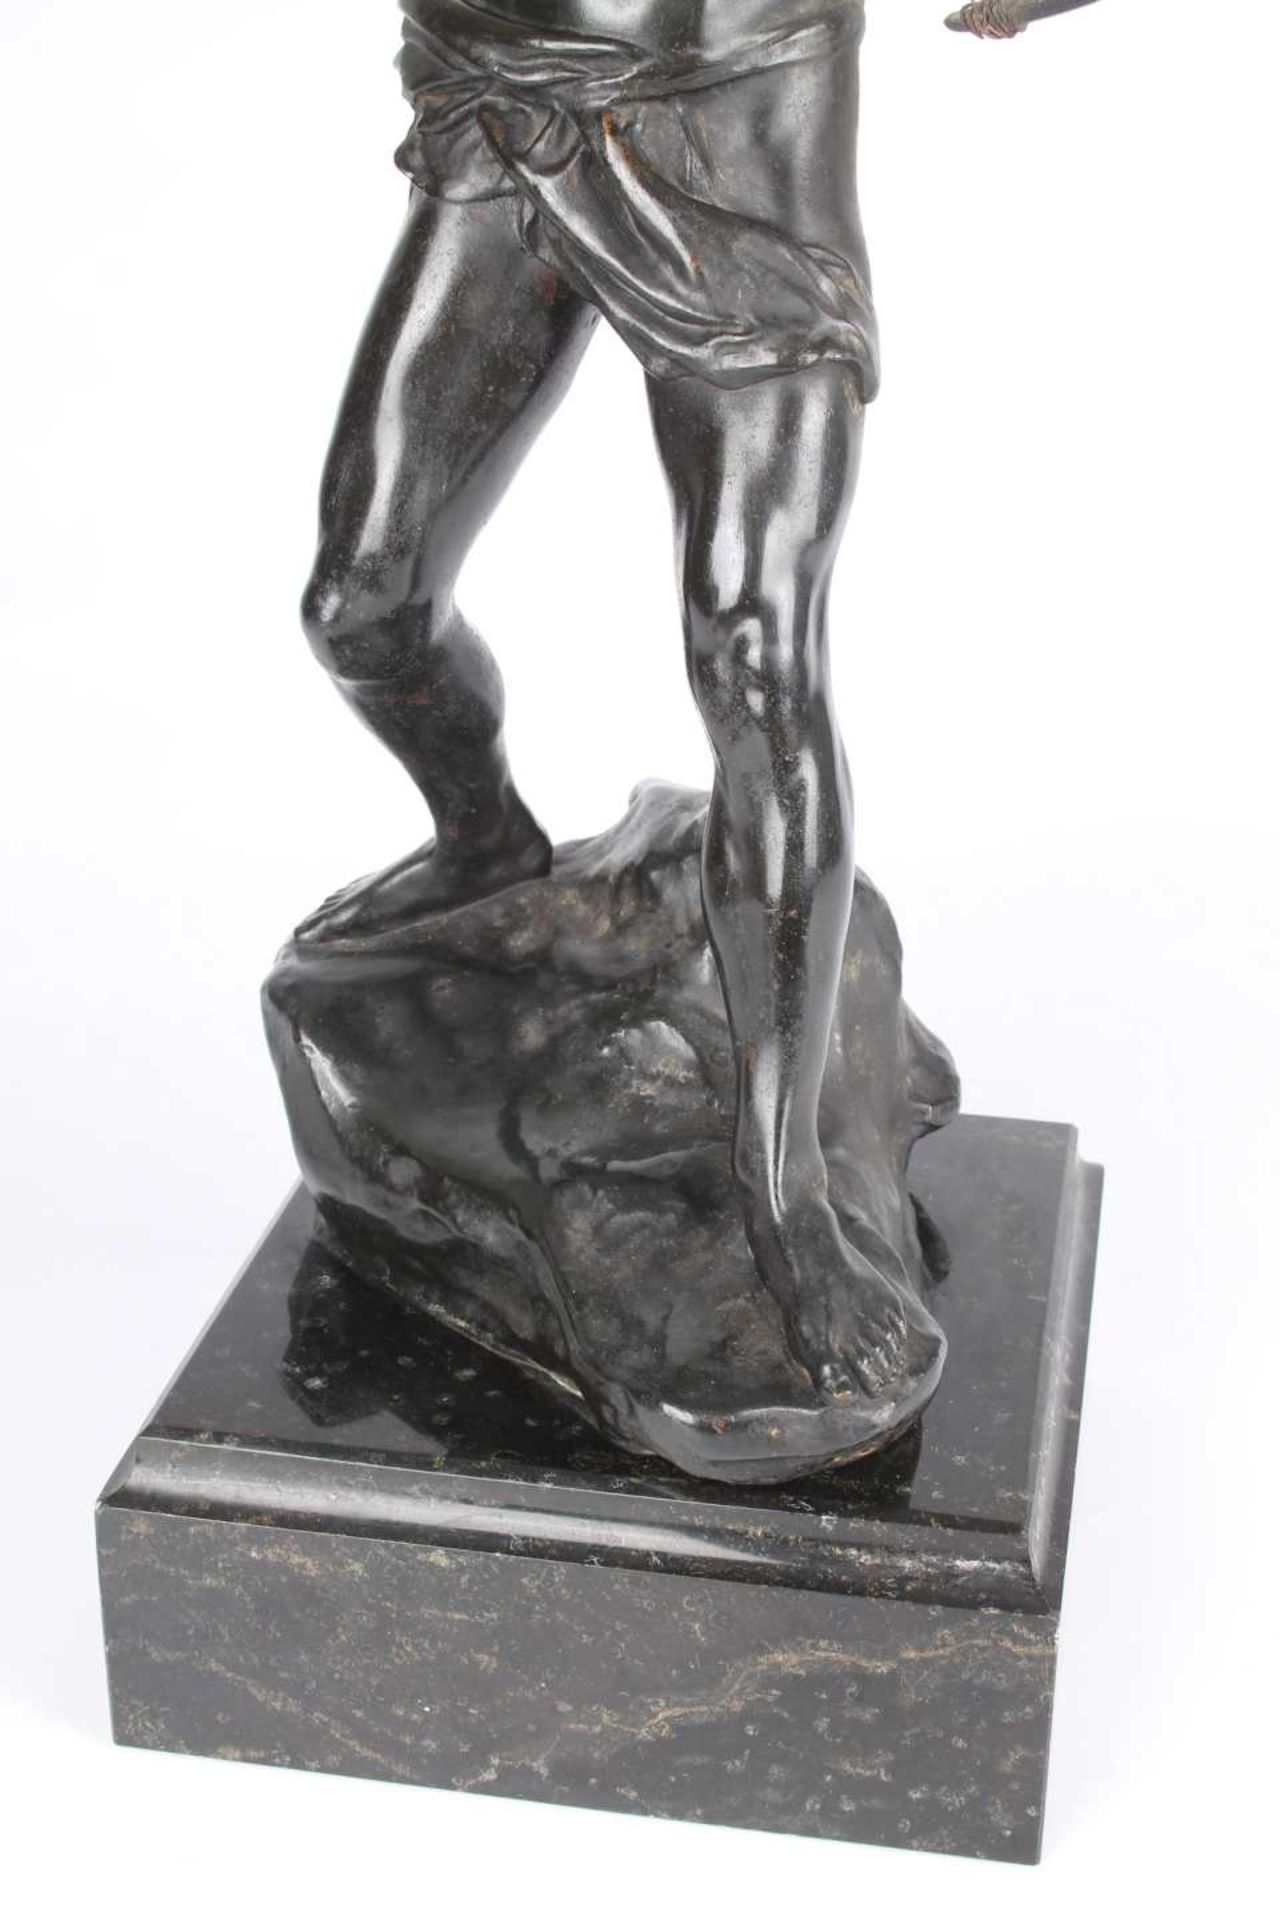 Pawel / Paul Kowalczewski (1865-1910) Bronze großer Bogenschütze, bronze archer, - Image 9 of 10